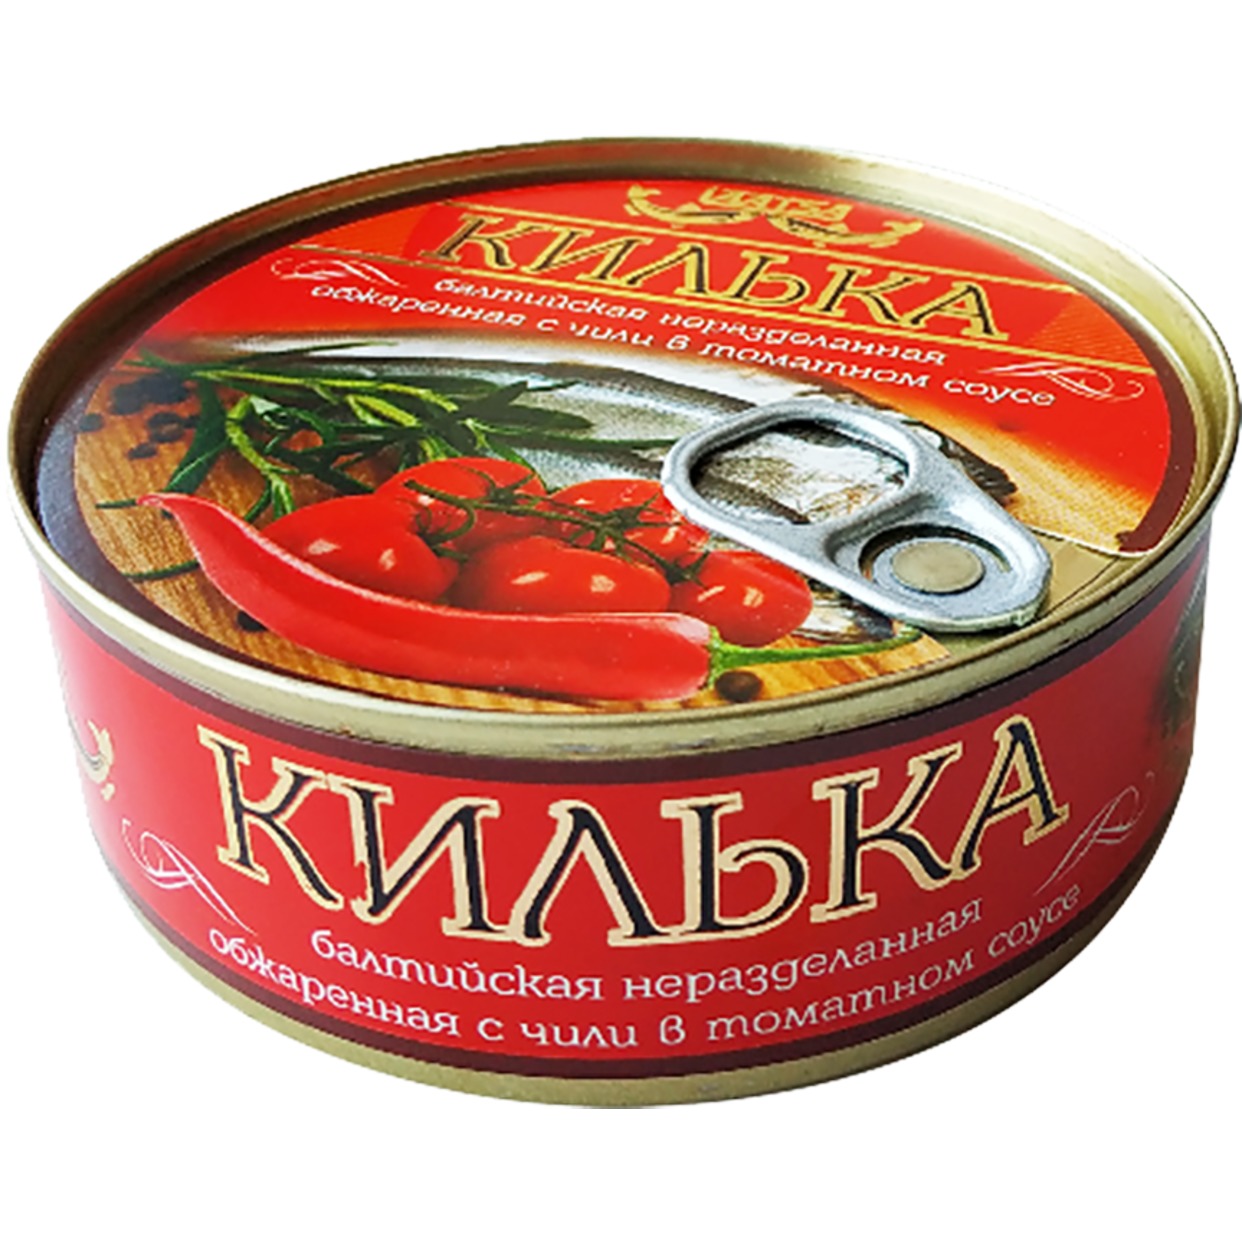 Консервы рыбные. Килька балтийская неразделанная обжаренная с чили в томатном соусе, 240г по акции в Пятерочке